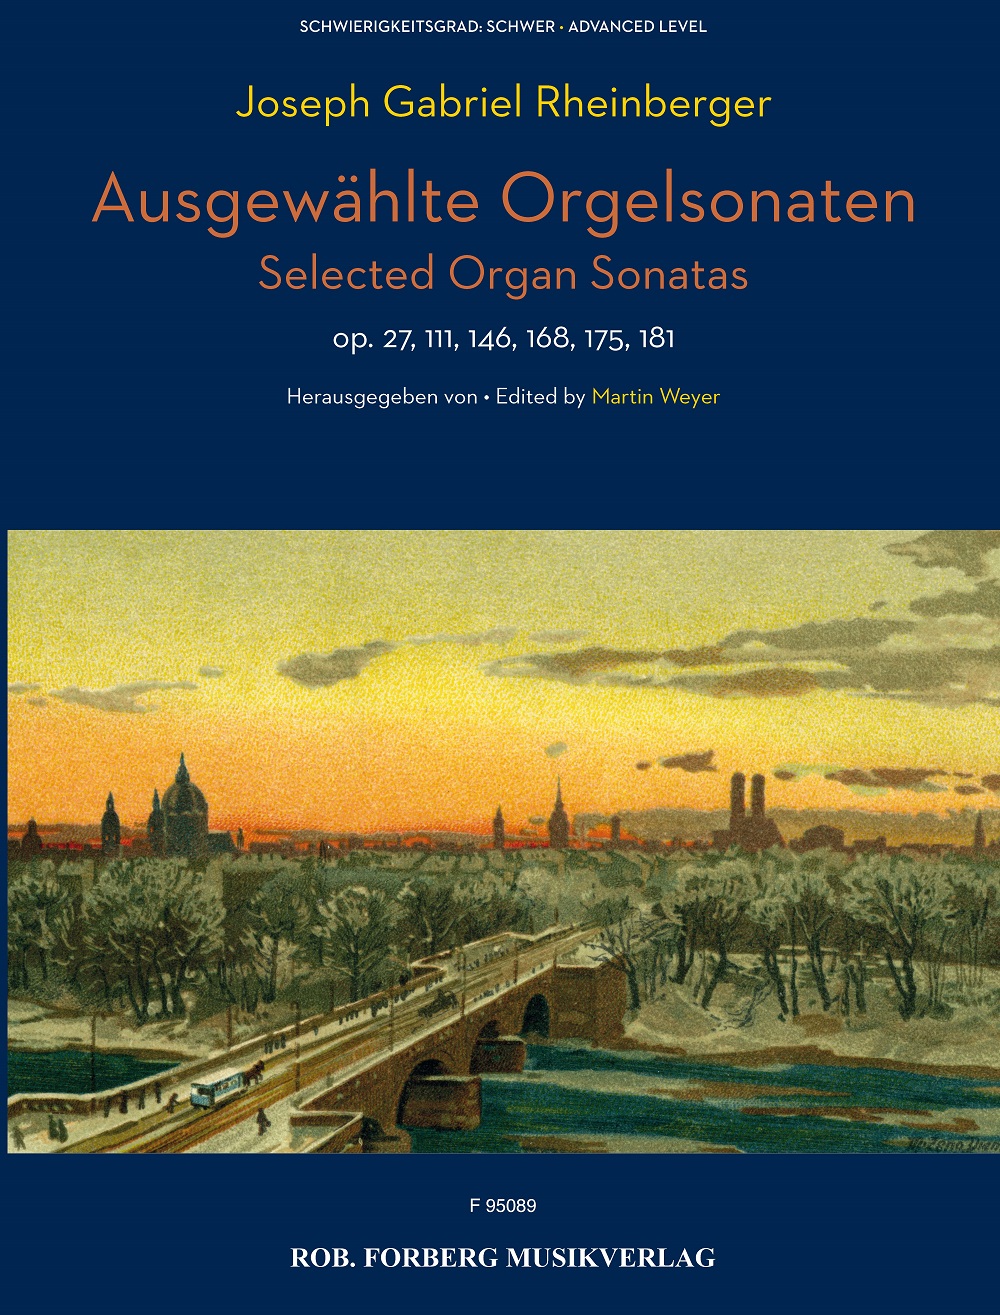 Joseph Gabriel Rheinberger: Ausgewählte Orgelsonaten: Organ: Instrumental Album